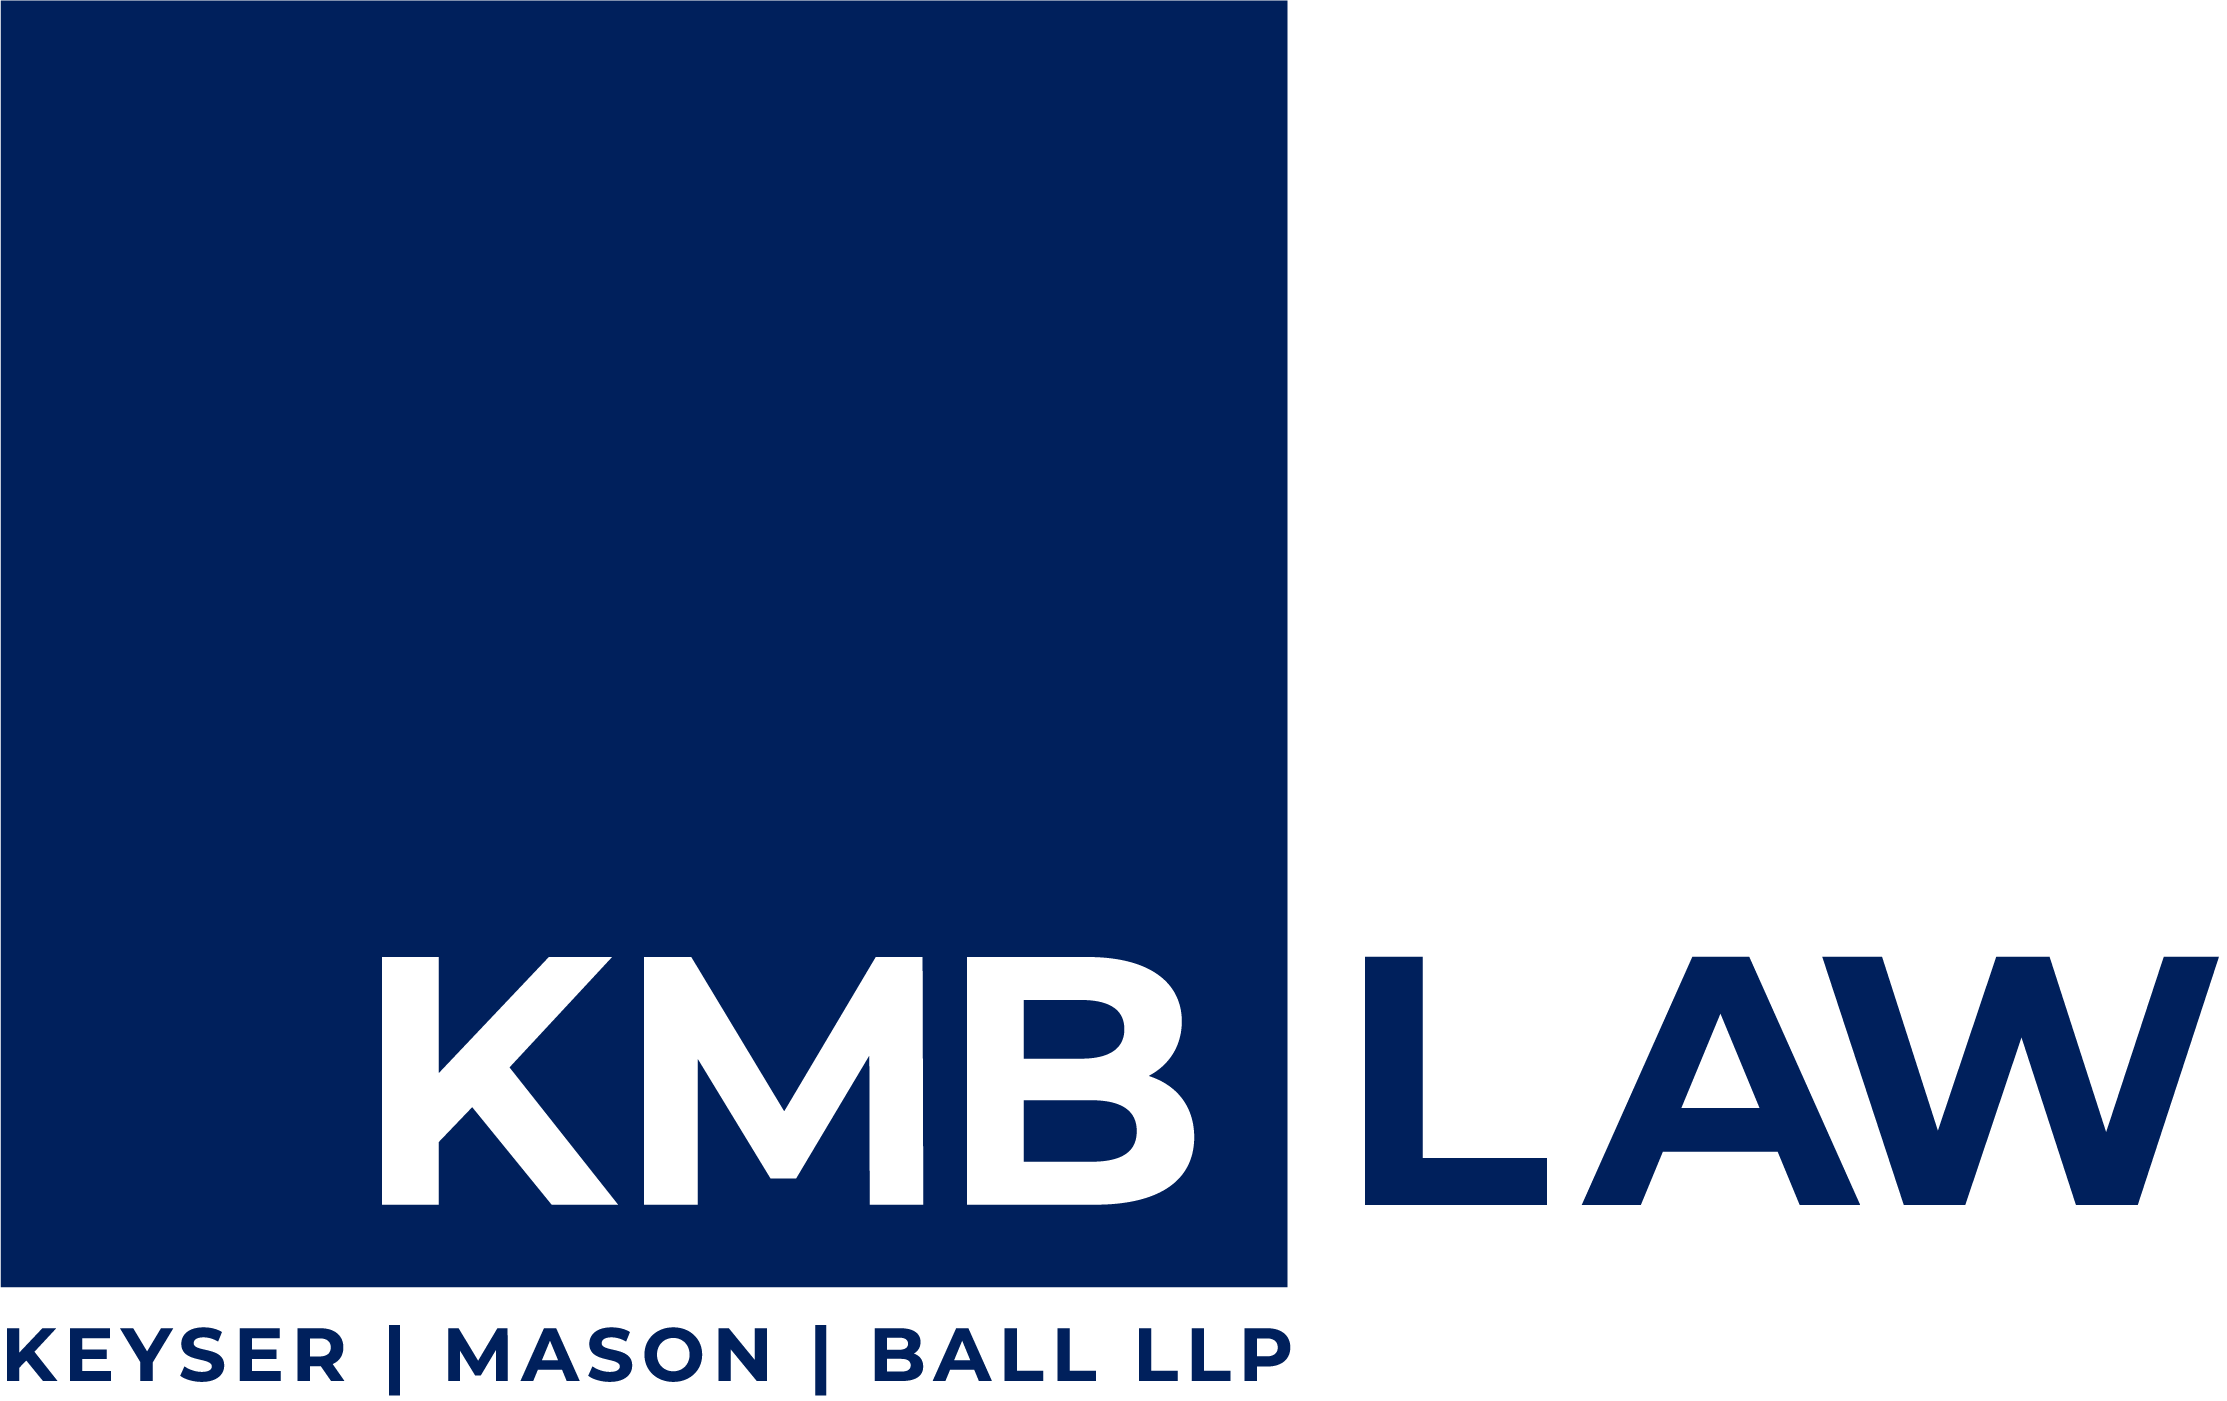 KMB logo blue